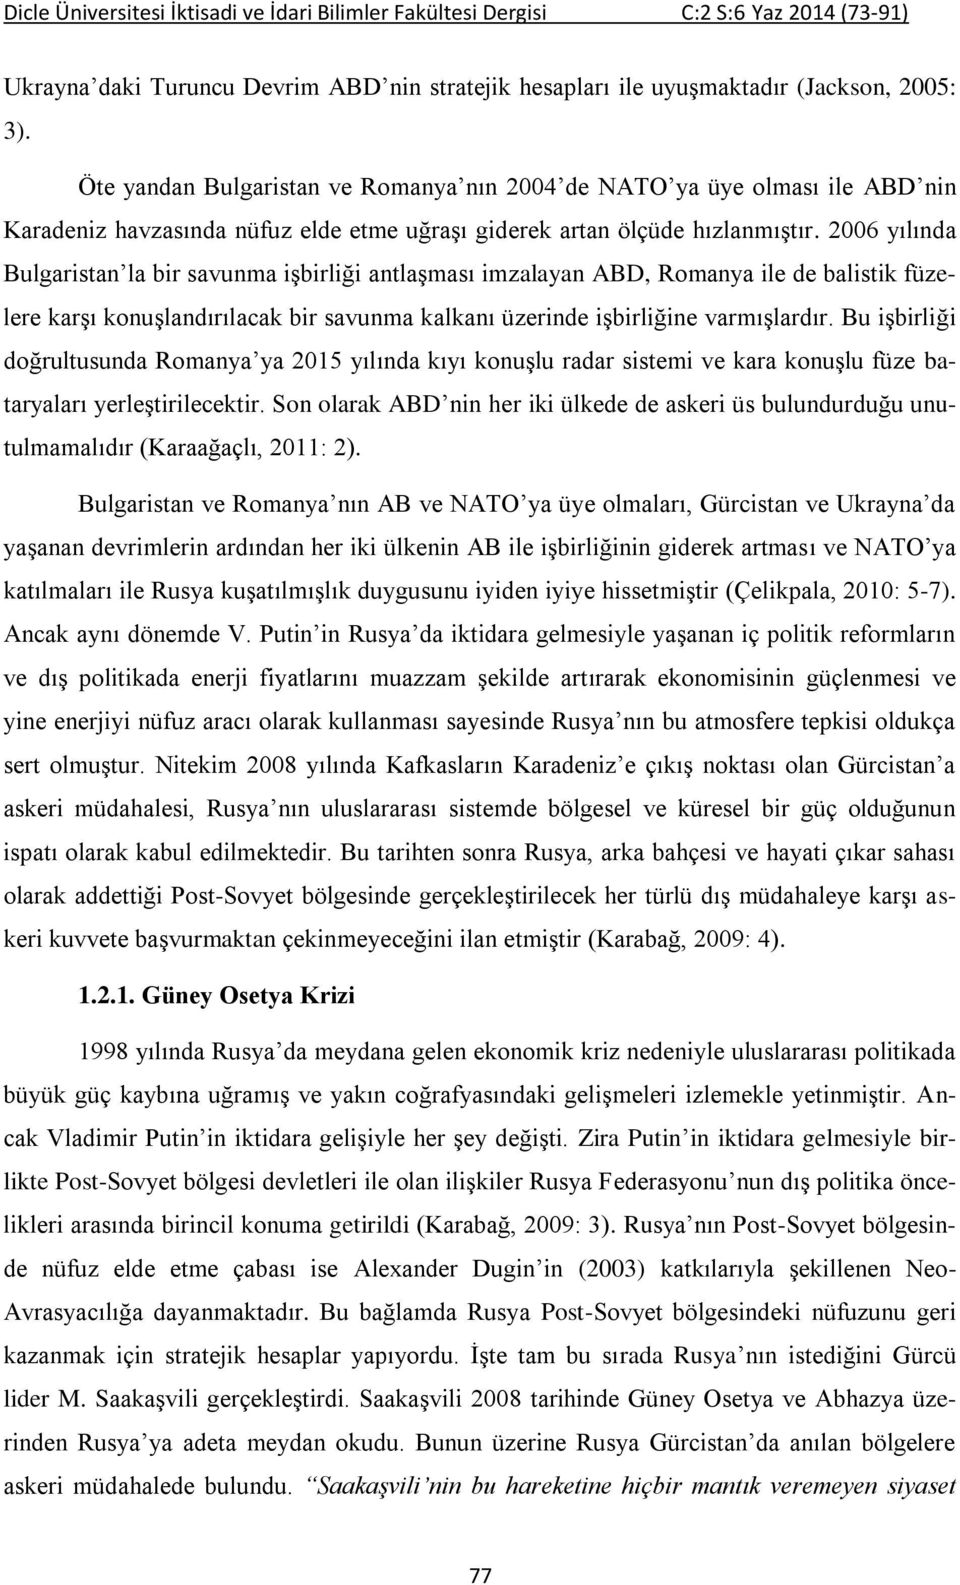 2006 yılında Bulgaristan la bir savunma işbirliği antlaşması imzalayan ABD, Romanya ile de balistik füzelere karşı konuşlandırılacak bir savunma kalkanı üzerinde işbirliğine varmışlardır.